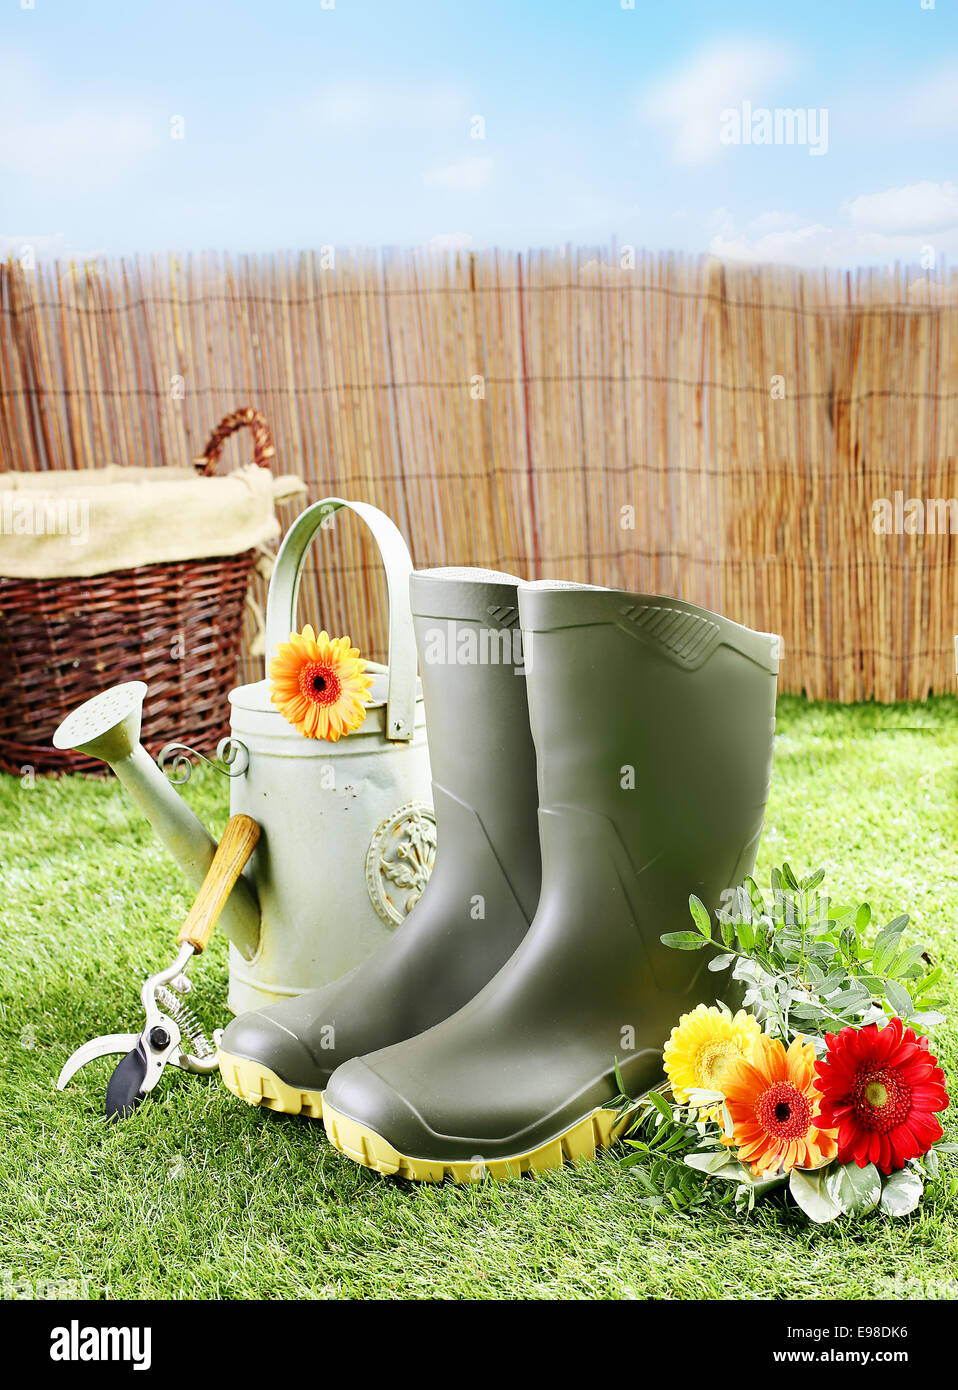 Gärtner-Werkzeuge und Geräte wie Gummistiefel, eine Gießkanne, Baum-, Rebscheren und einen Weidenkorb auf einem grünen Rasen und Blumen an einem sonnigen Tag Stockfoto